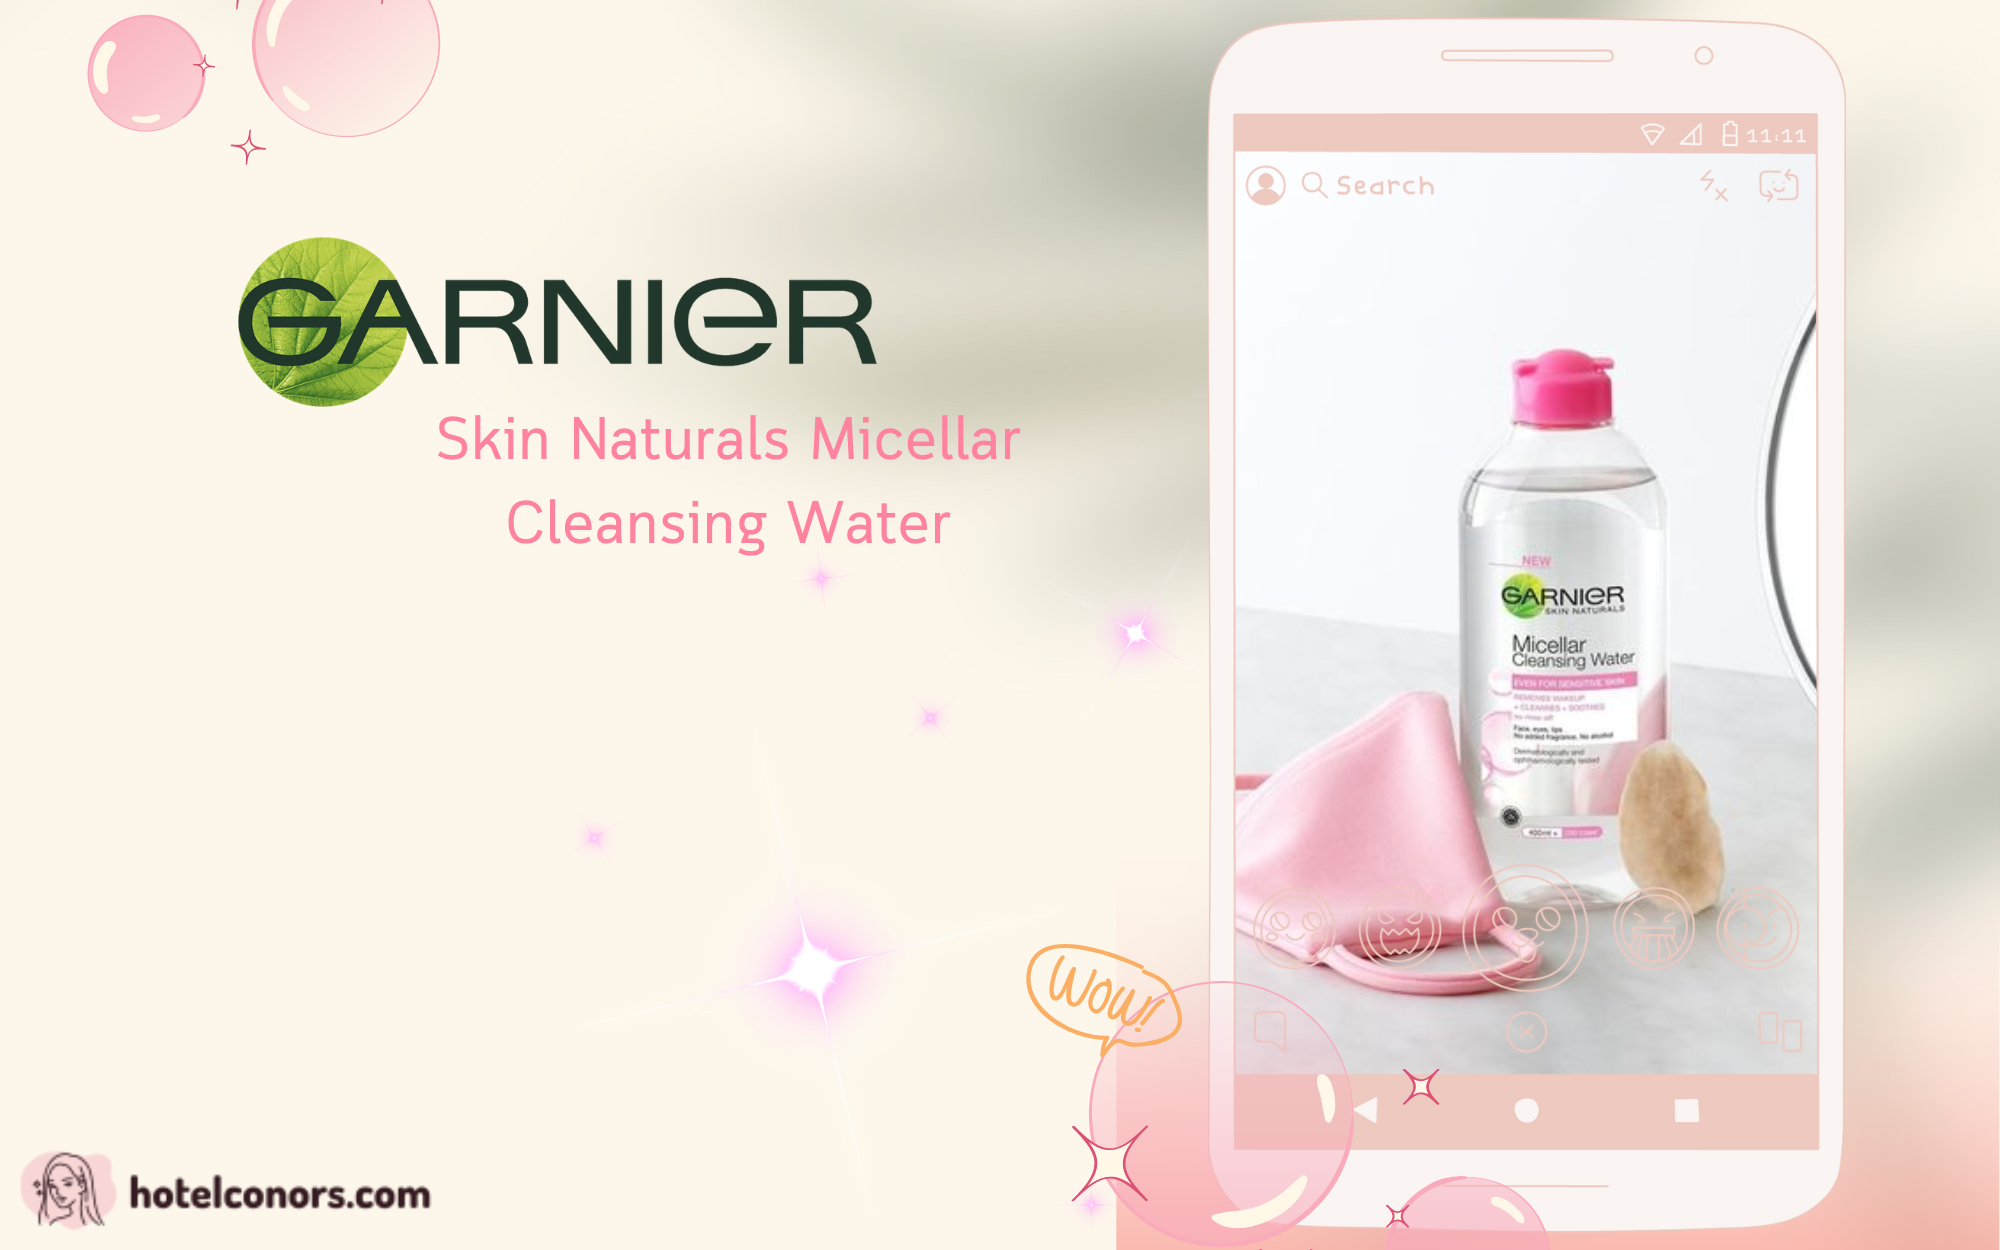 รีวิว Garnier Skin Naturals Micellar Cleansing Water เช็ดเดียวจบ